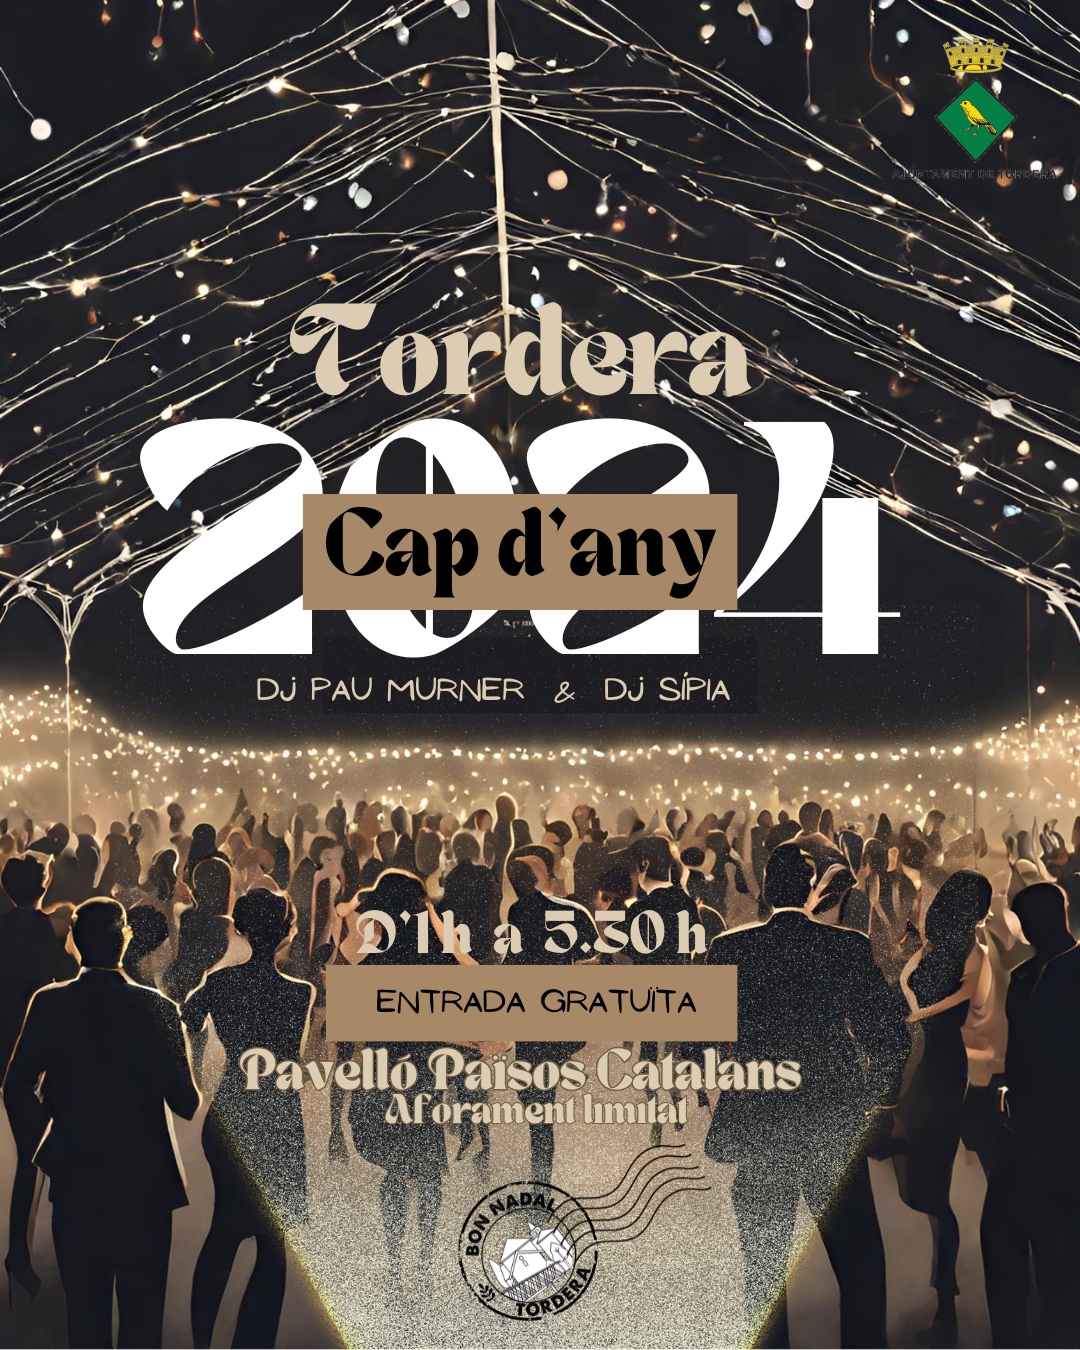 Tordera donarà la benvinguda al nou any amb una festa al Pavelló dels Països Catalans